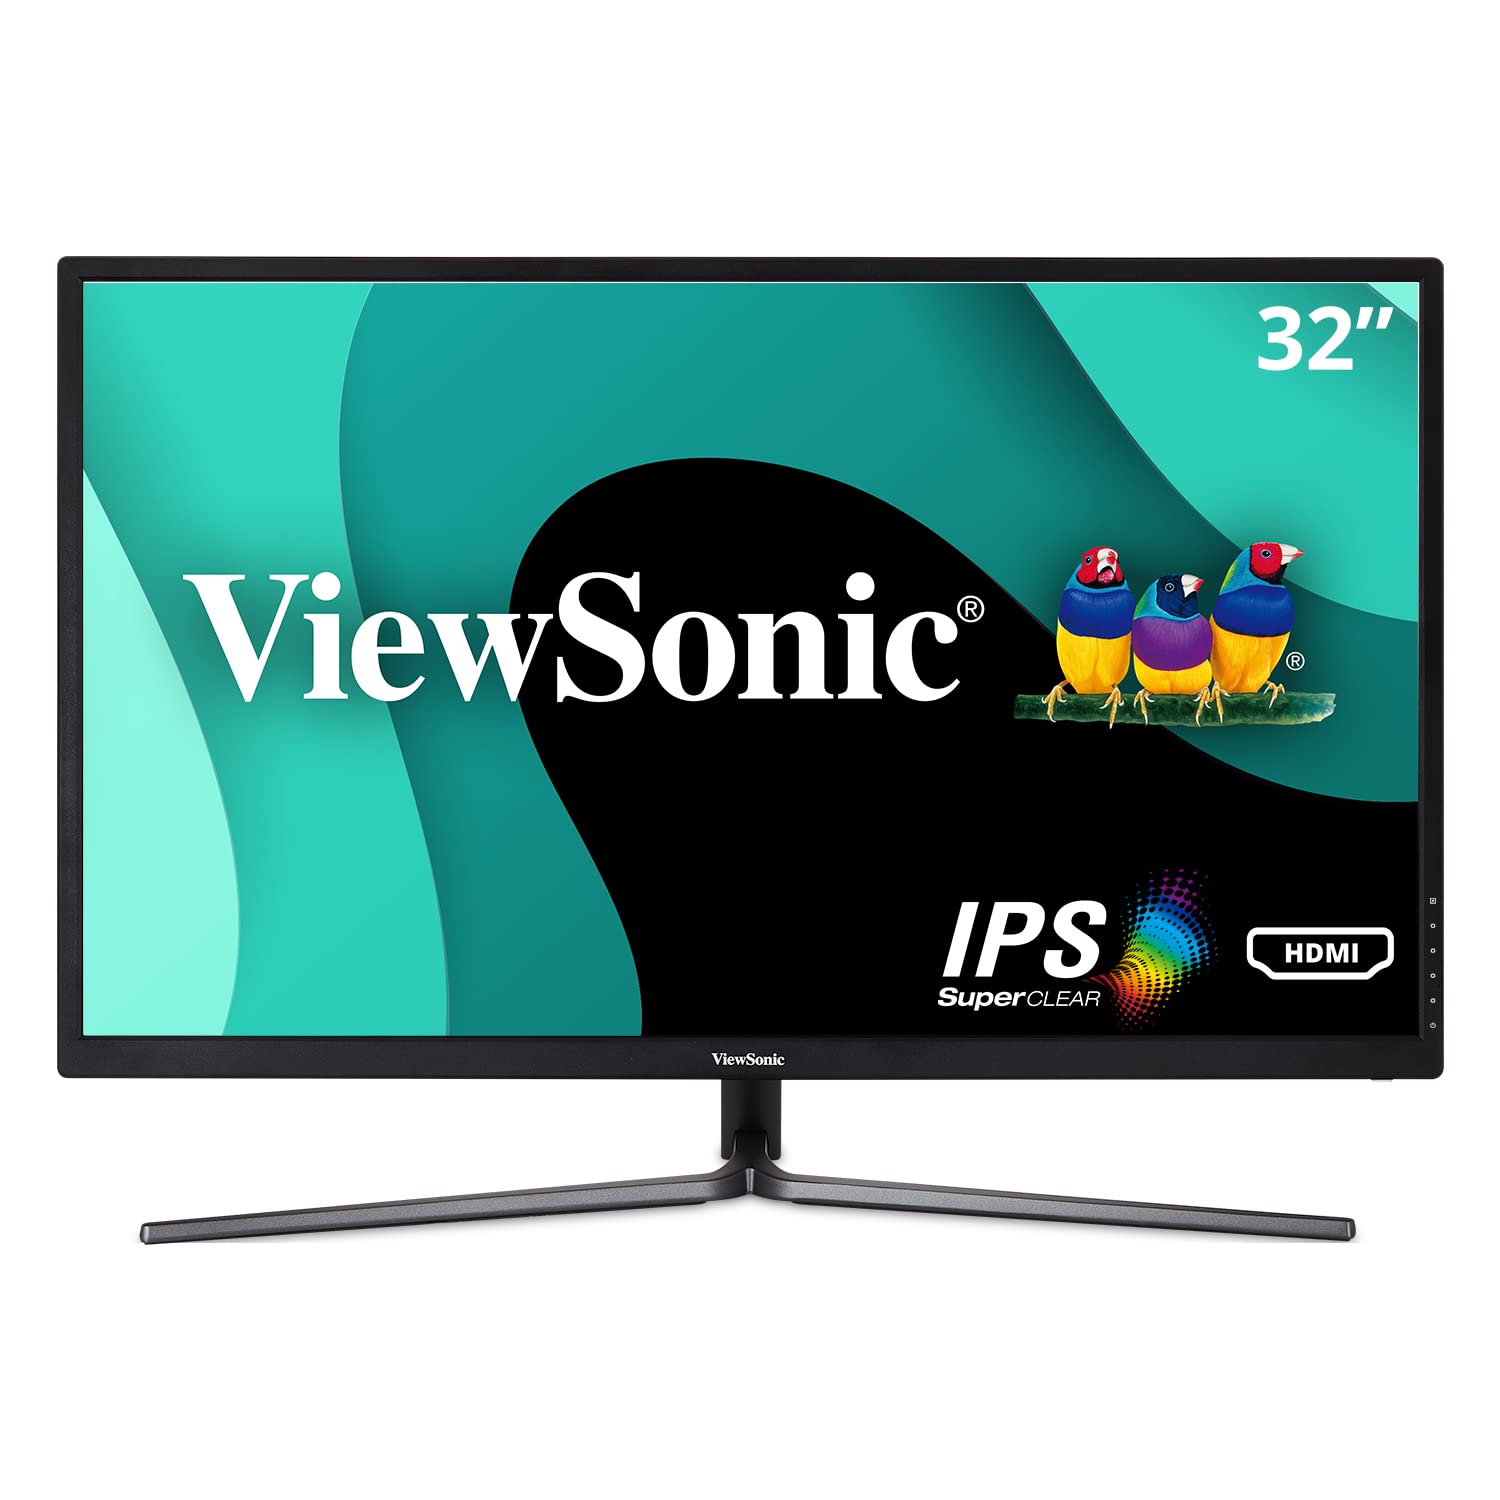 Viewsonic VX3211-2K-MHD 32 英寸 IPS WQHD 1440p 显示器，具有 99% sRGB 颜色覆盖率 HDMI VGA 和 DisplayPort，黑色